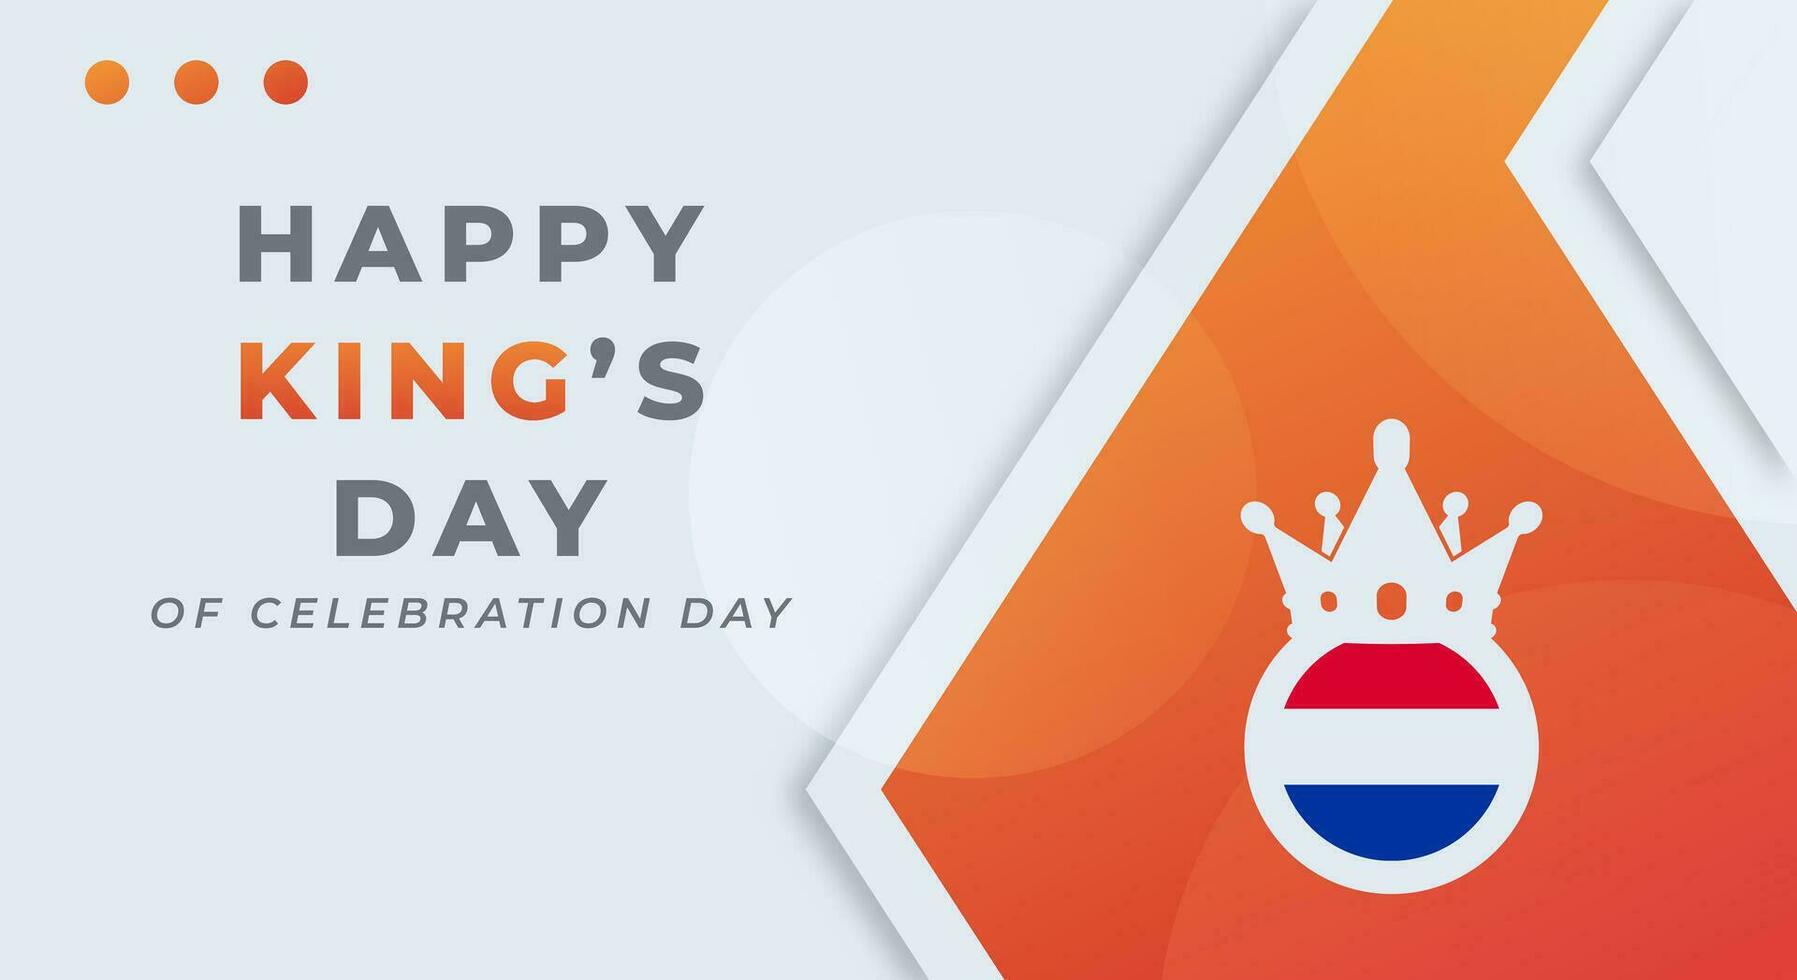 contento del rey día koningsdag celebracion vector diseño ilustración para fondo, póster, bandera, publicidad, saludo tarjeta